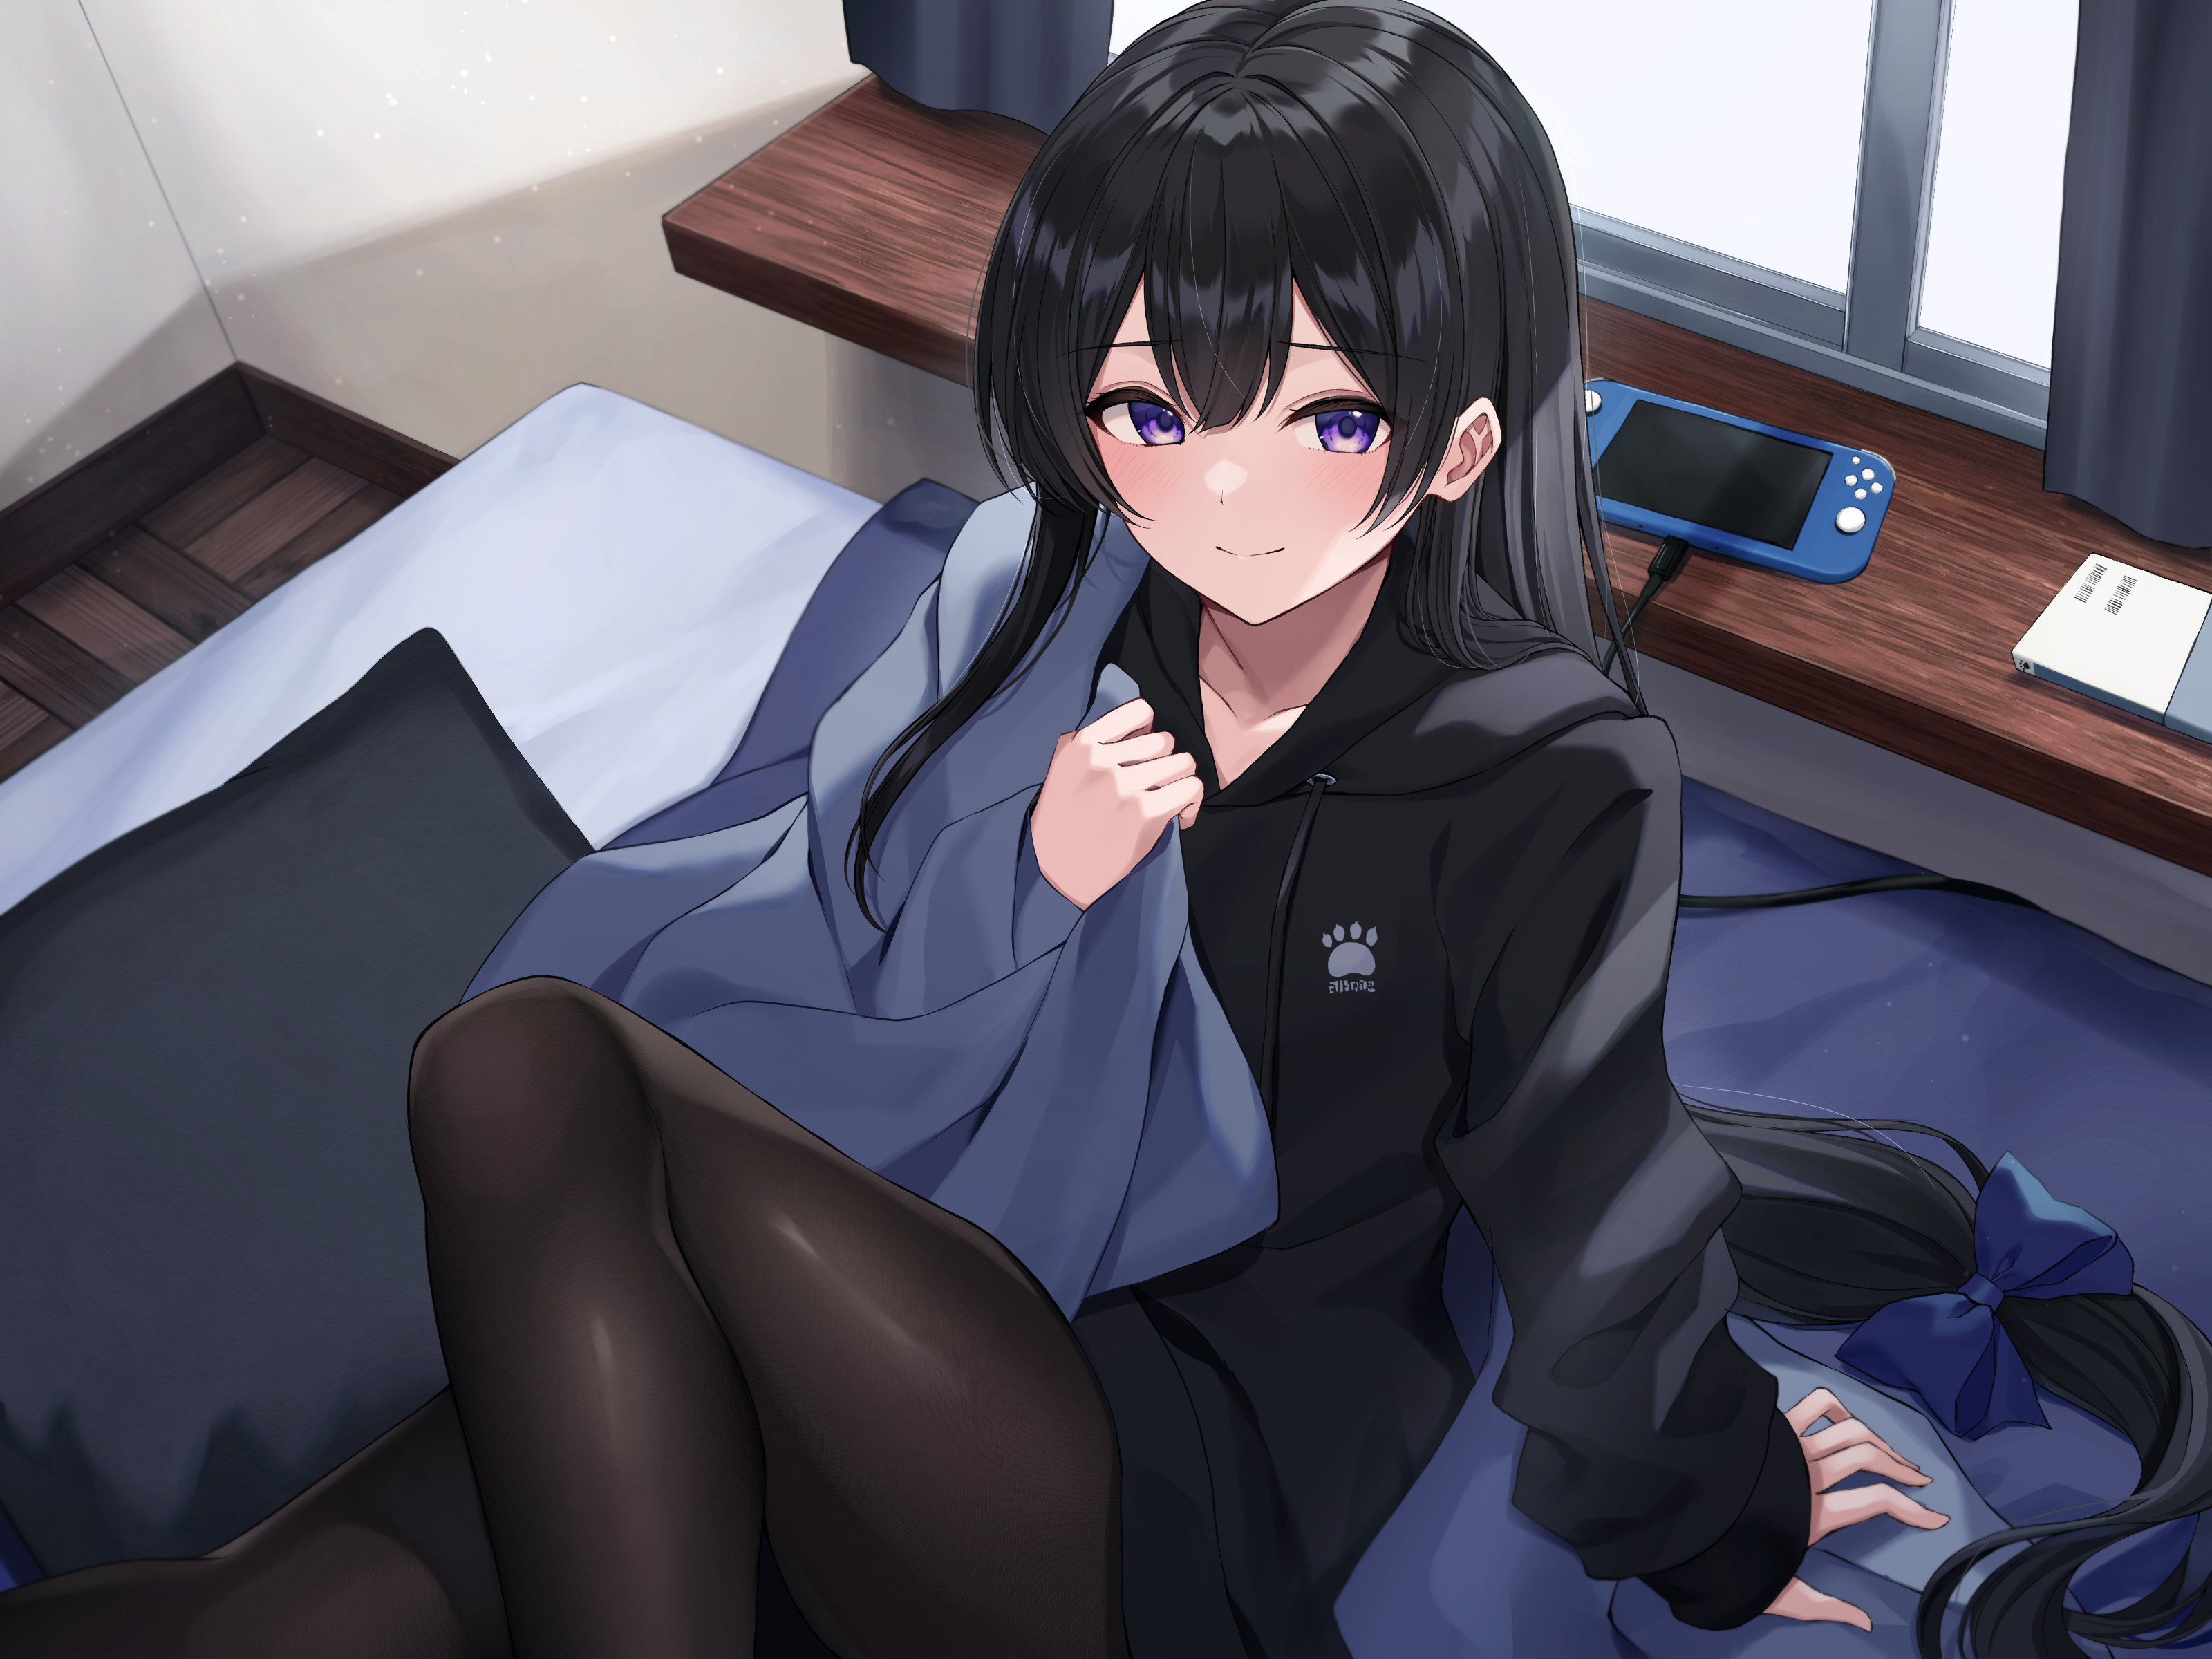 Anime Anime Girls Kurousagi Yuu Artwork Long Hair Black Hair Purple Eyes Smiling In Bed 3200x2400